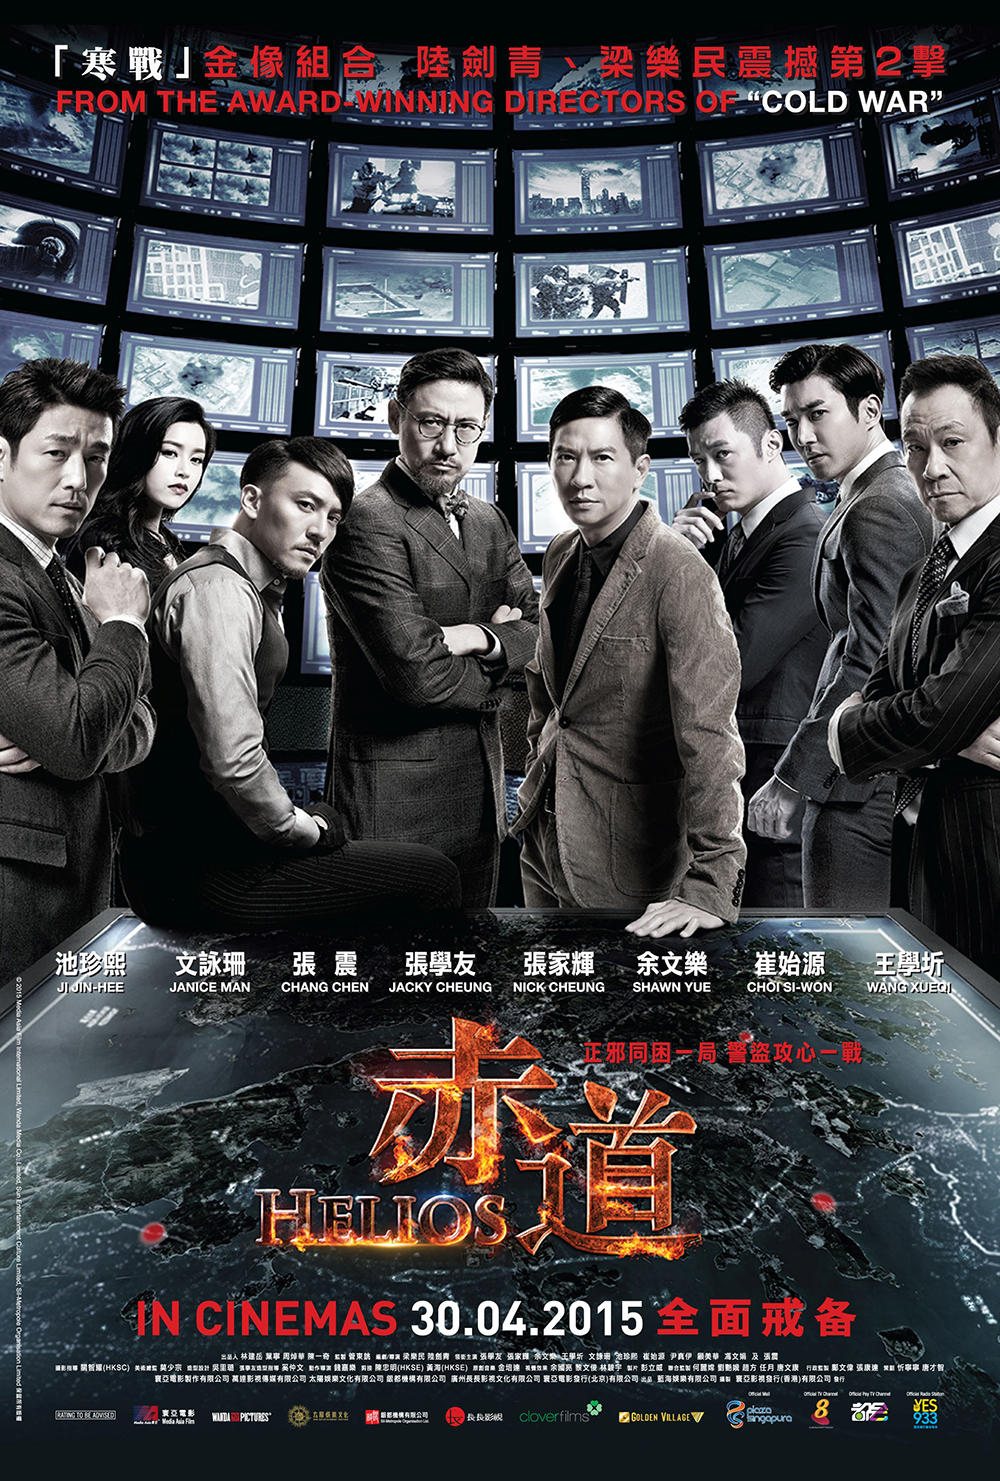 Helios (赤道) Movie Poster 2015